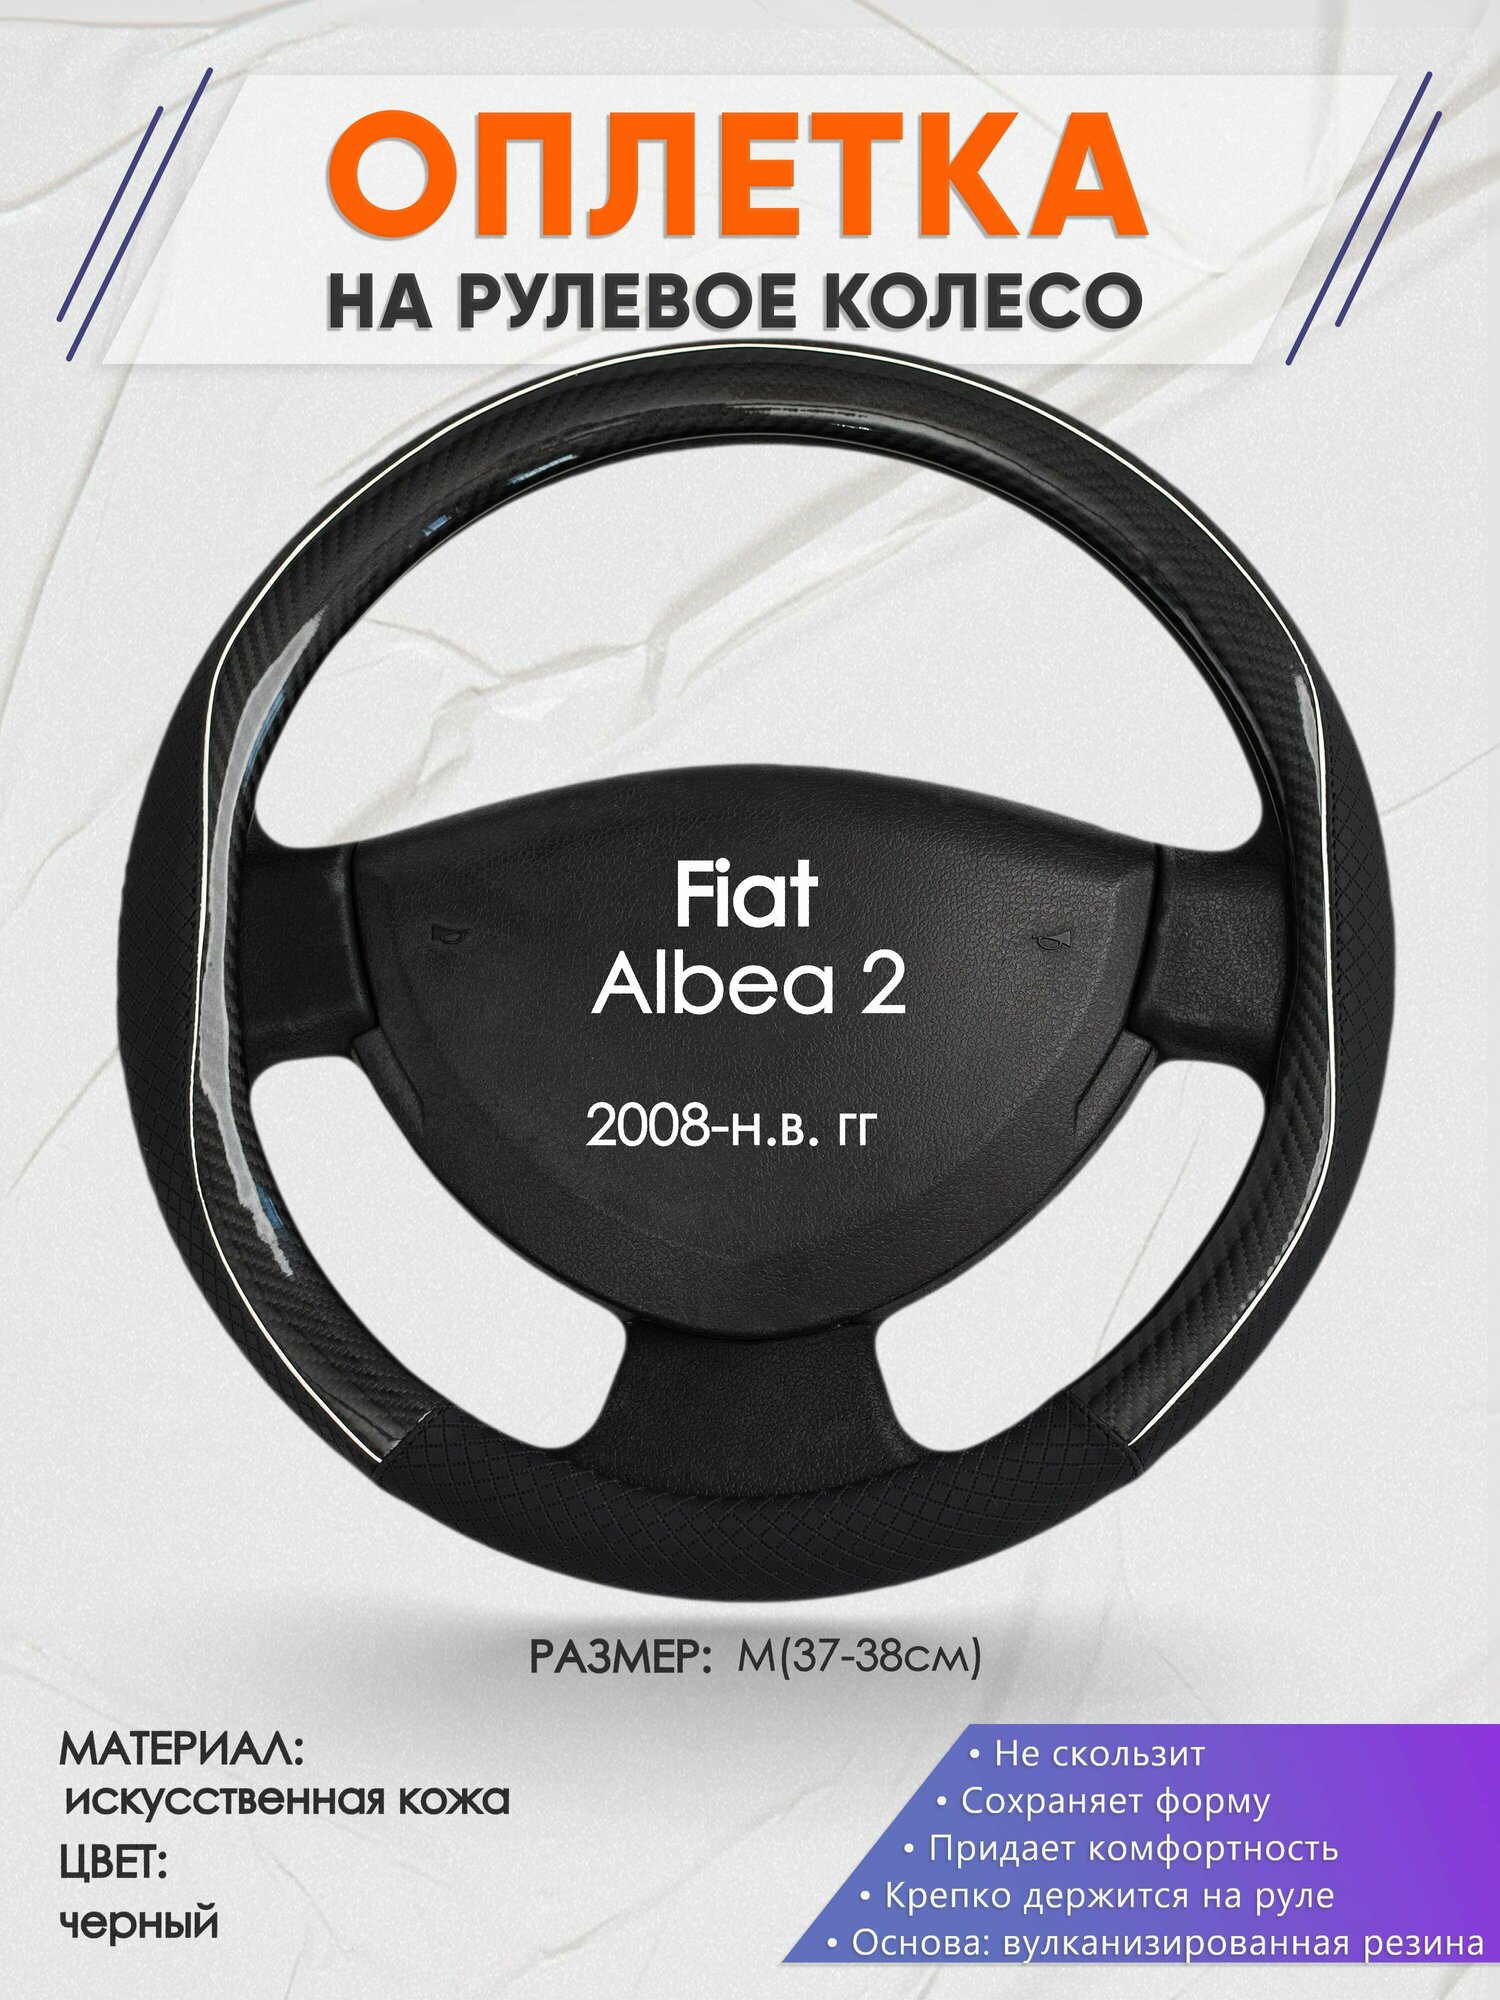 Оплетка на руль для Fiat Albea 2(Фиат Альбеа) 2008-н. в, M(37-38см), Искусственная кожа 06